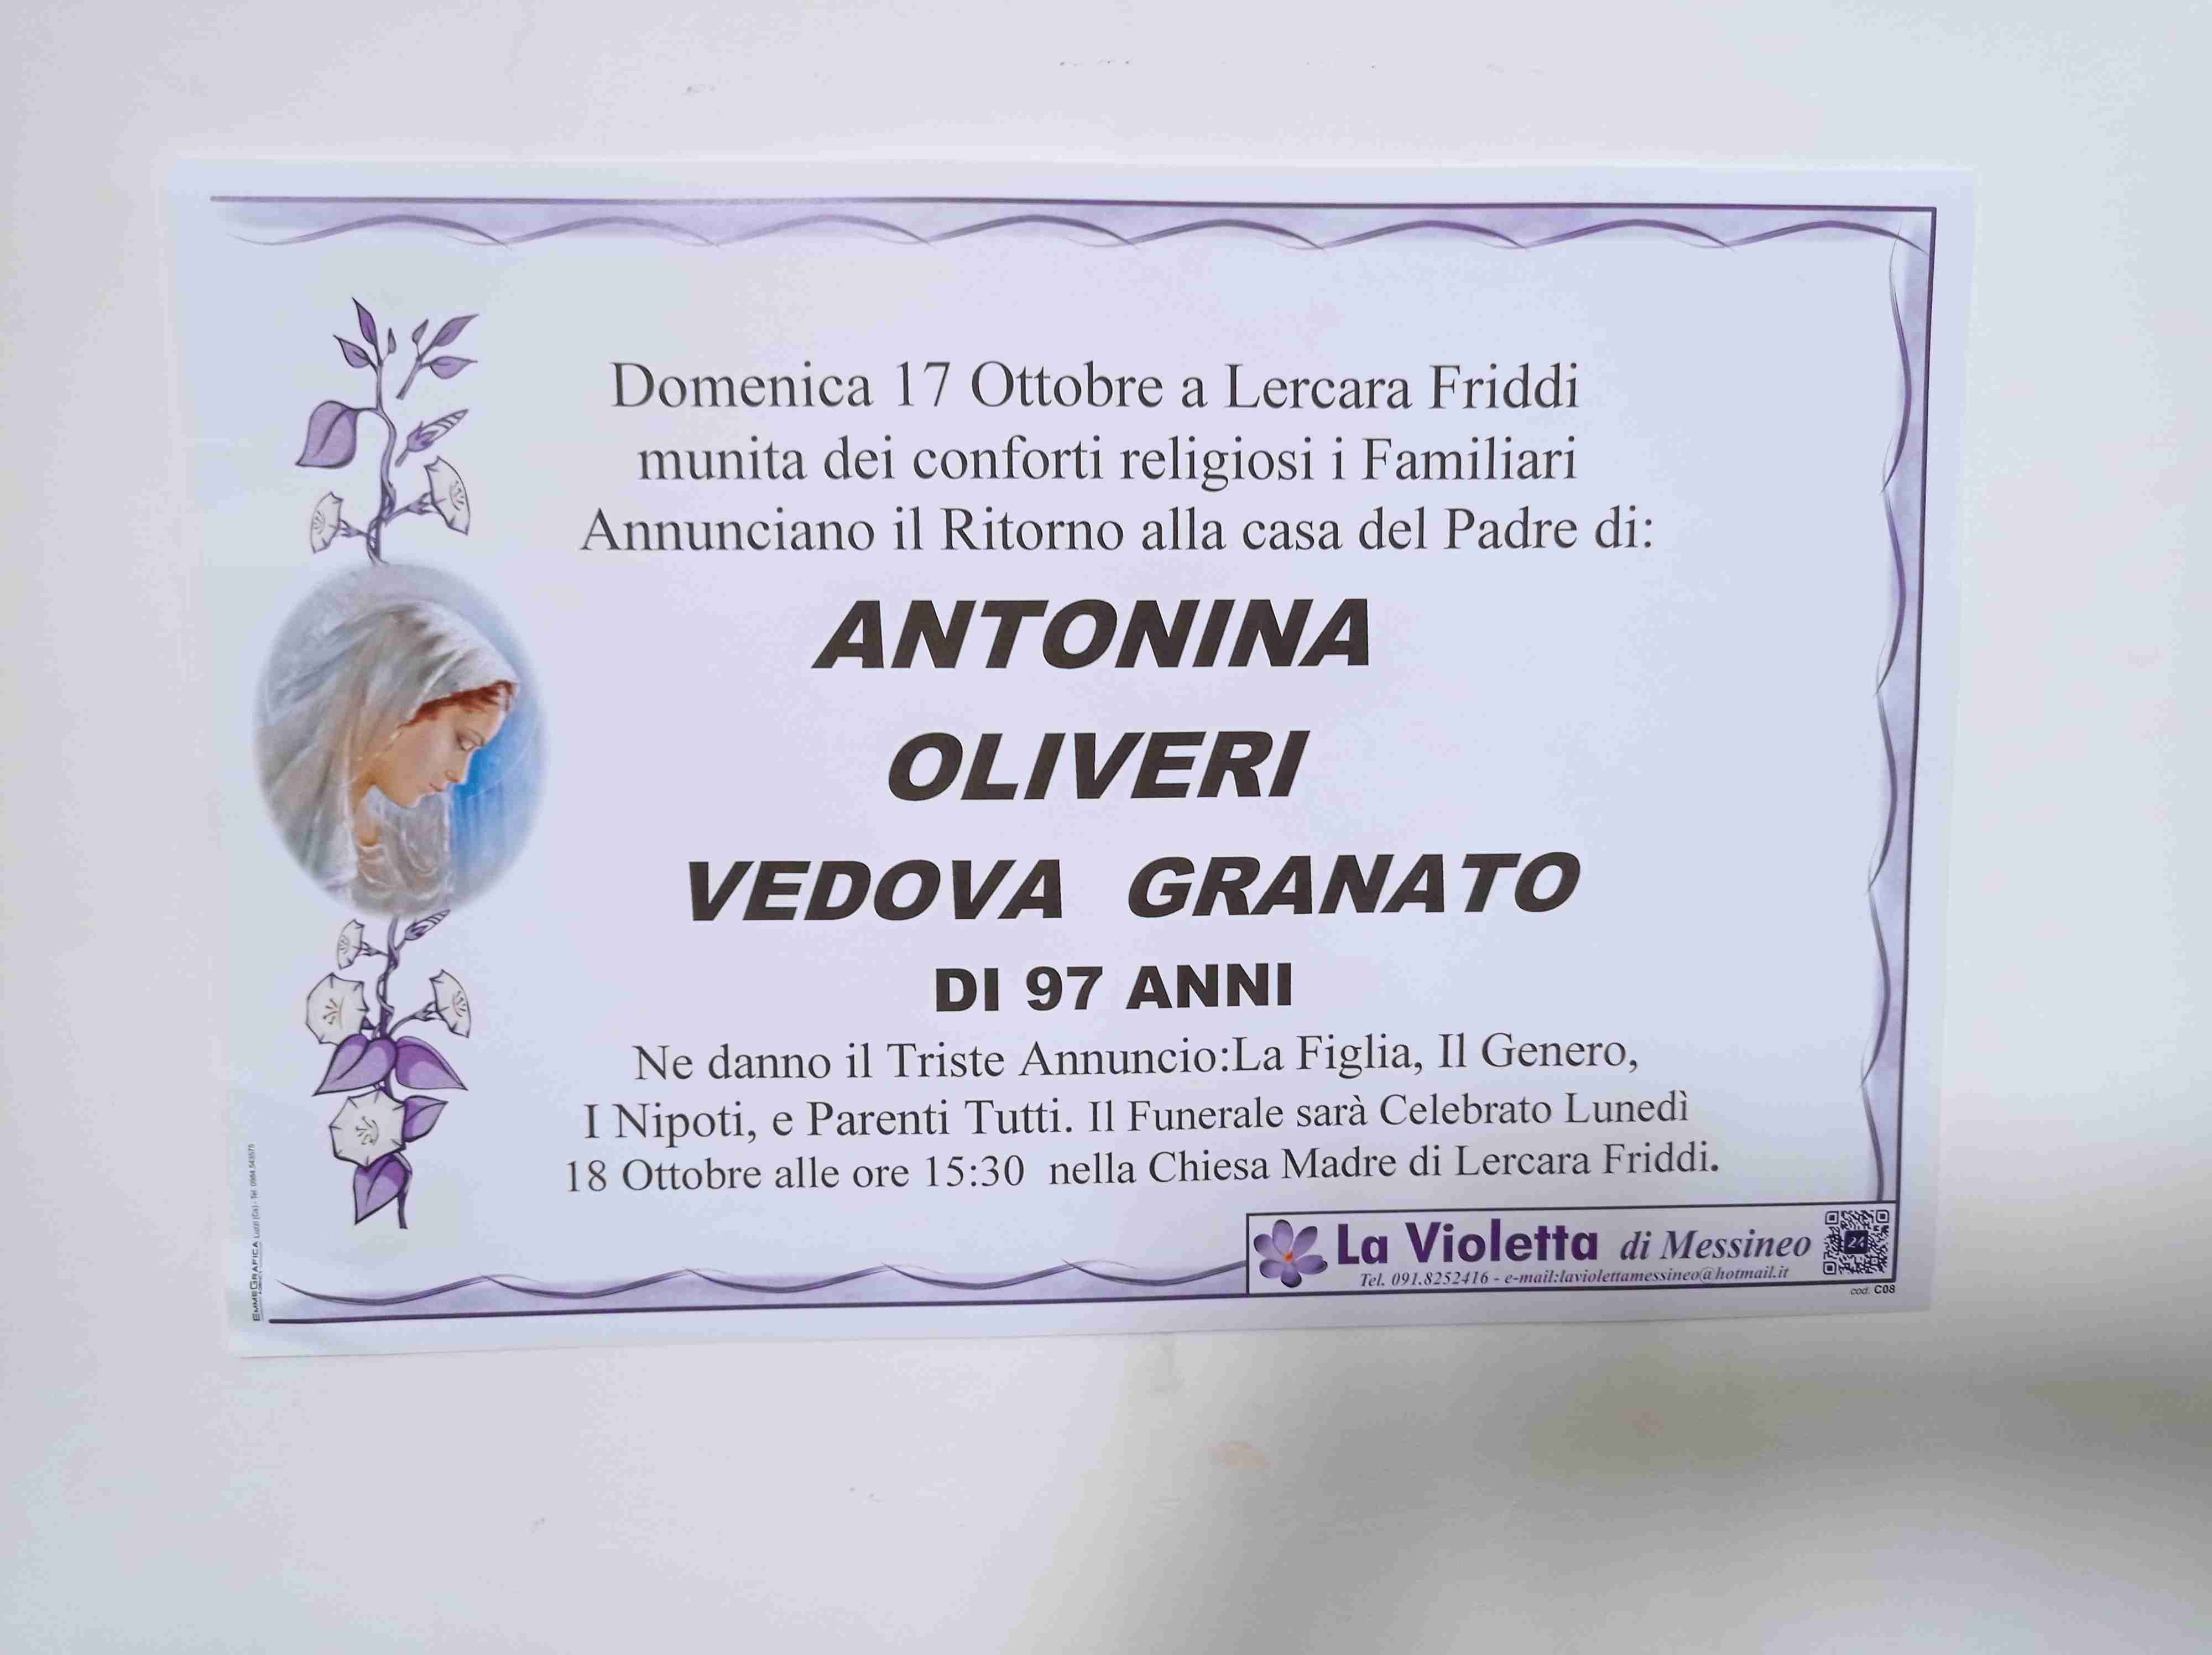 Antonina Oliveri